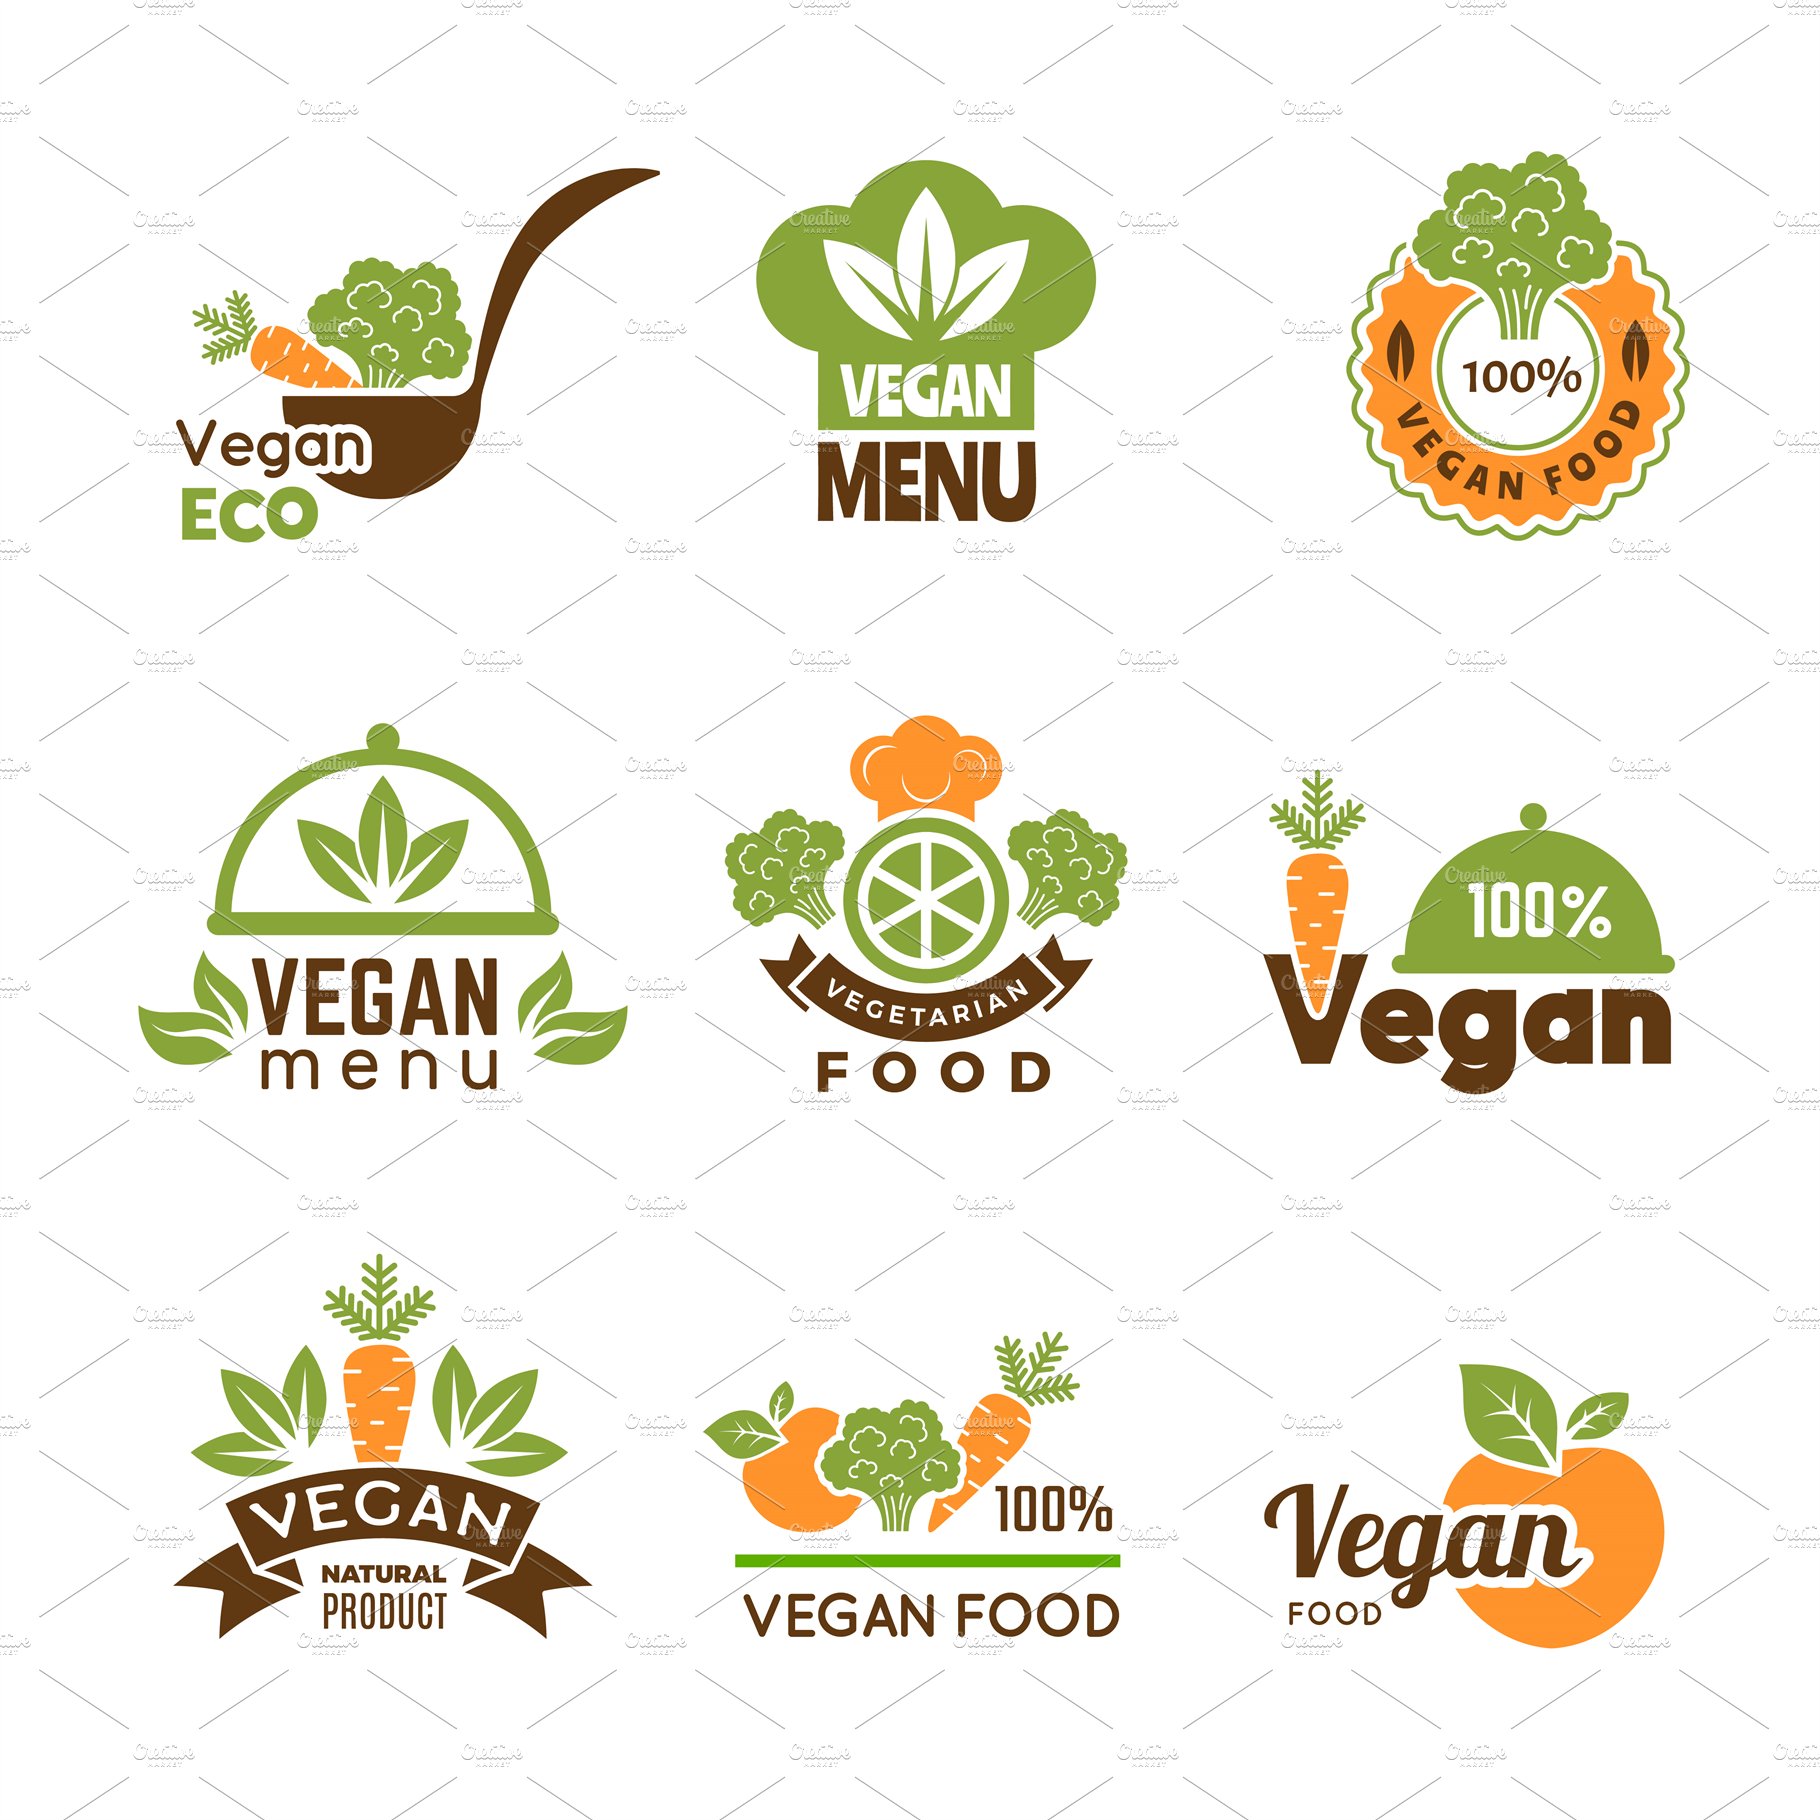 Vegan logo. Healthy food vegetarian cover image.